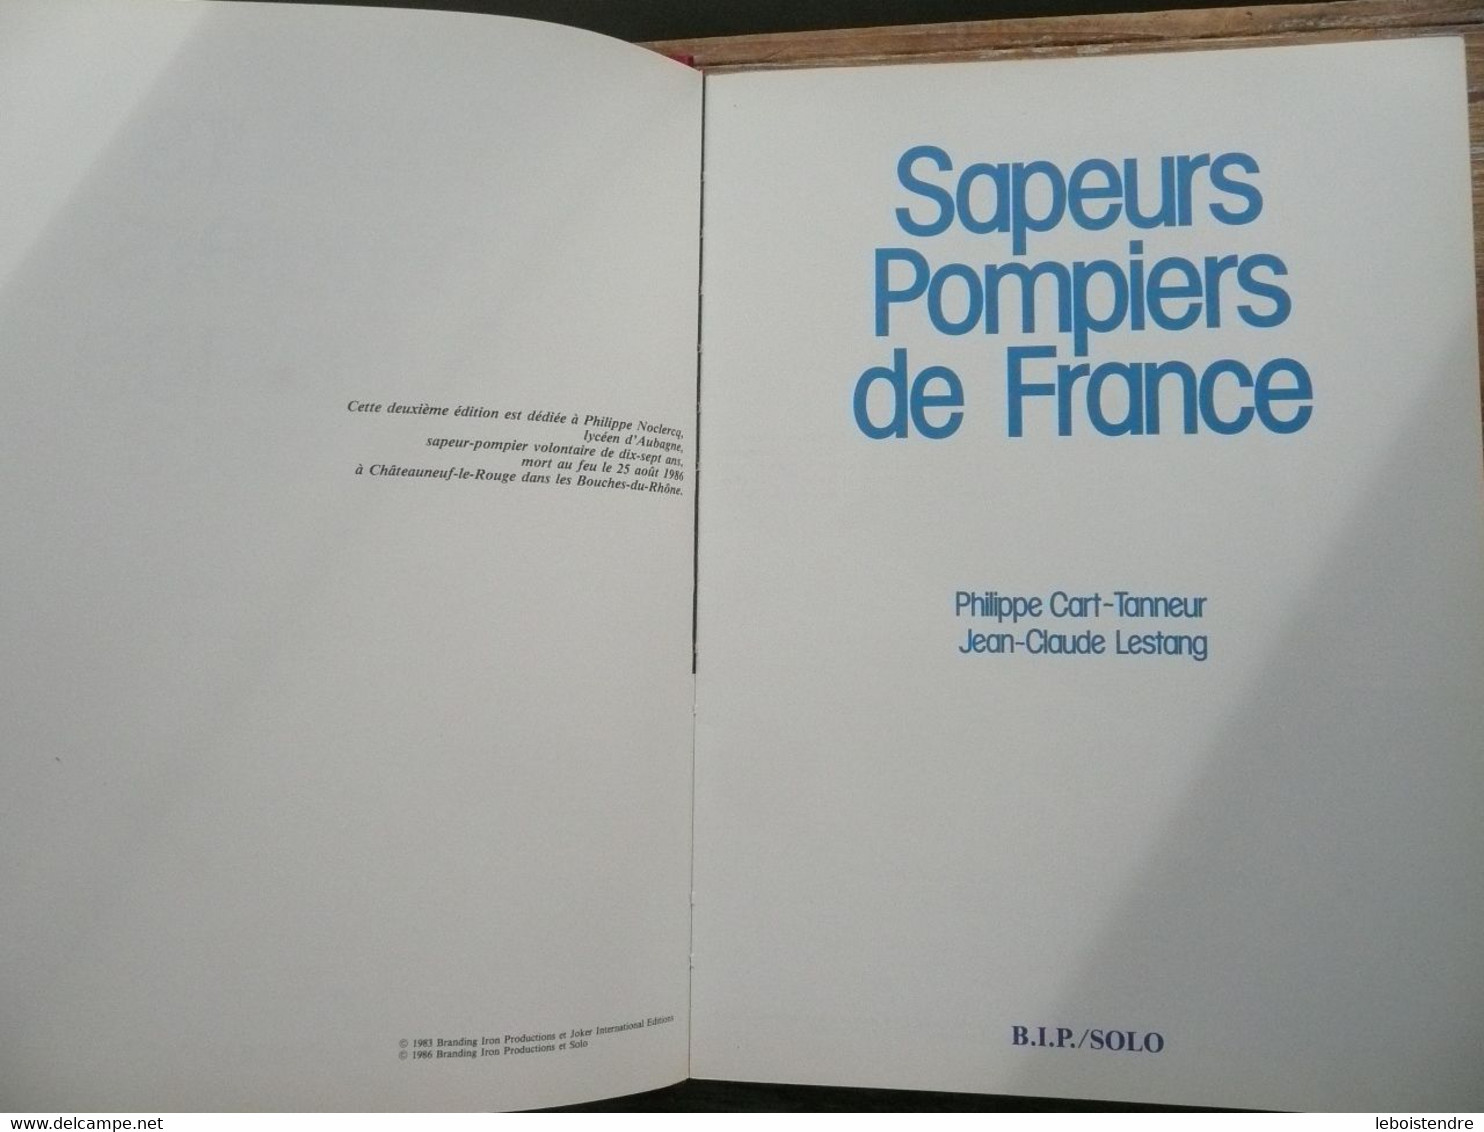 SAPEURS POMPIERS DE FRANCE 1986 PHILIPPE CART - TANNEUR JEAN - CLAUDE LESTANG INSIGNE METAL EN RELIEF TRANCHE DOREE